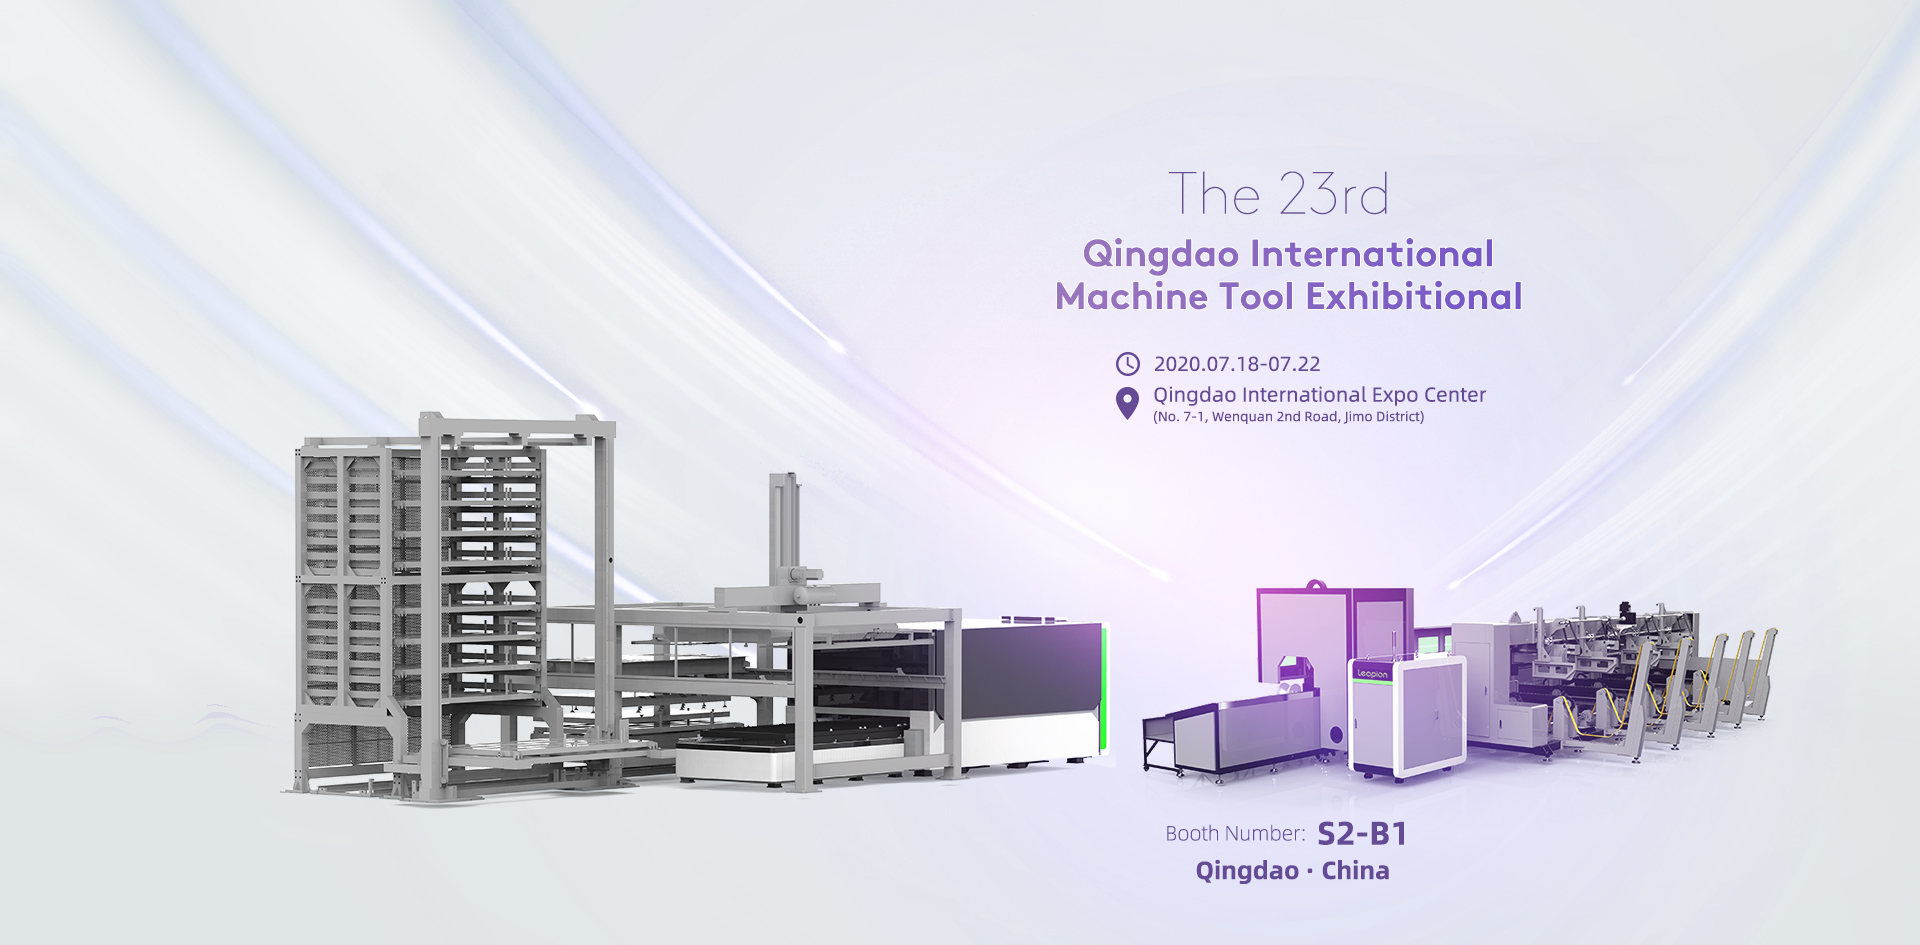 معرض تشينغداو الدولي الثالث والعشرون لأدوات الآلات